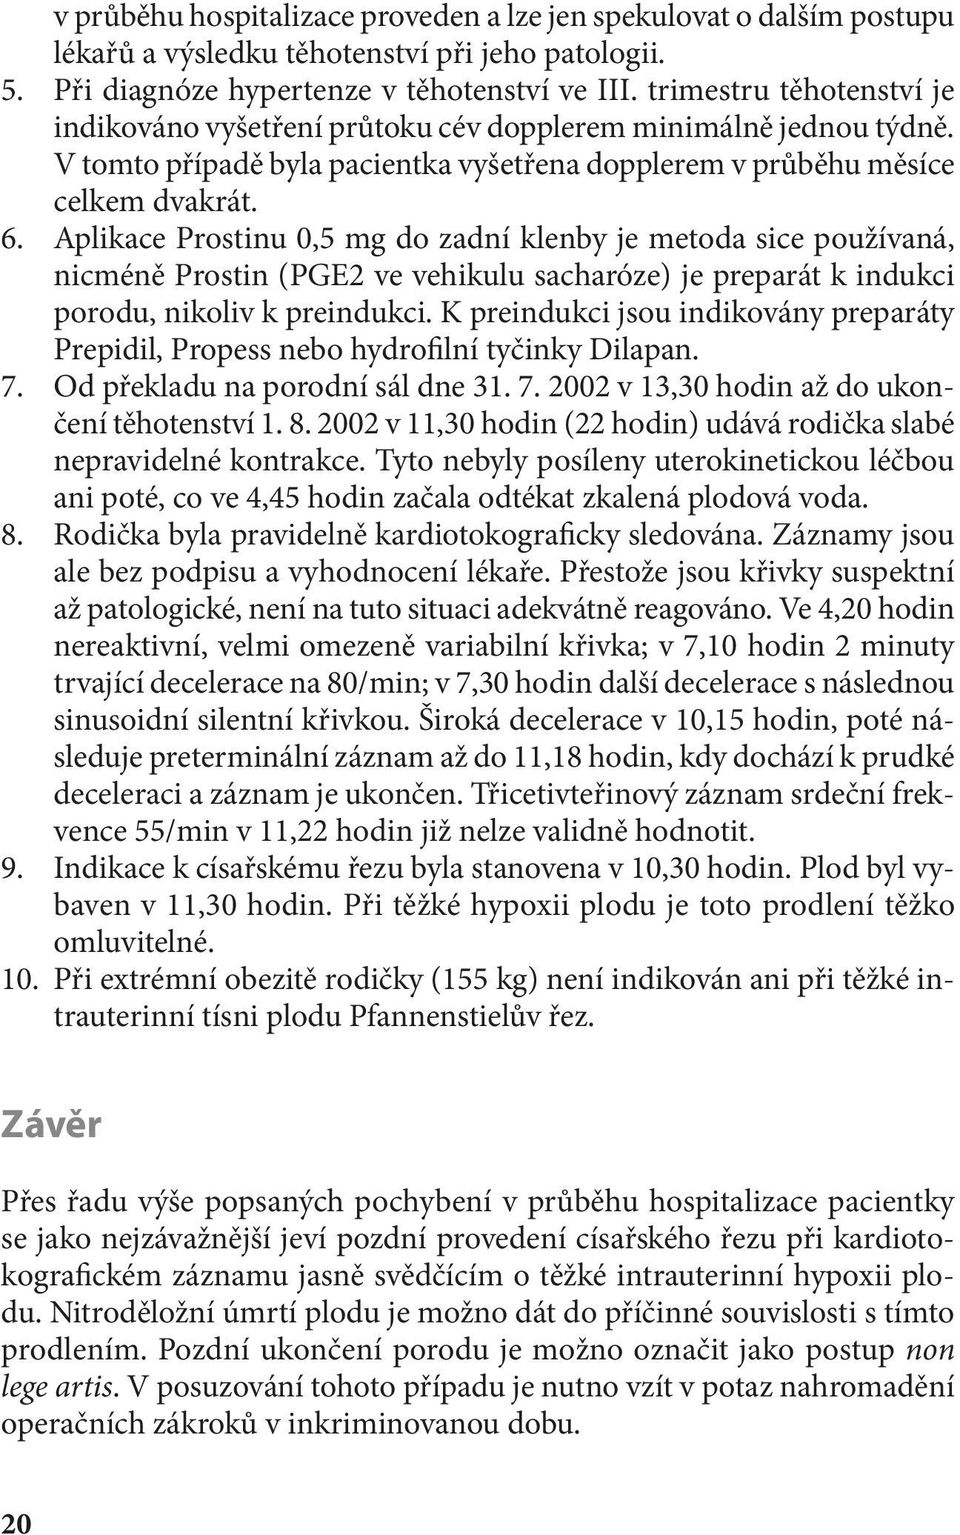 Aplikace Prostinu 0,5 mg do zadní klenby je metoda sice používaná, nicméně Prostin (PGE2 ve vehikulu sacharóze) je preparát k indukci porodu, nikoliv k preindukci.